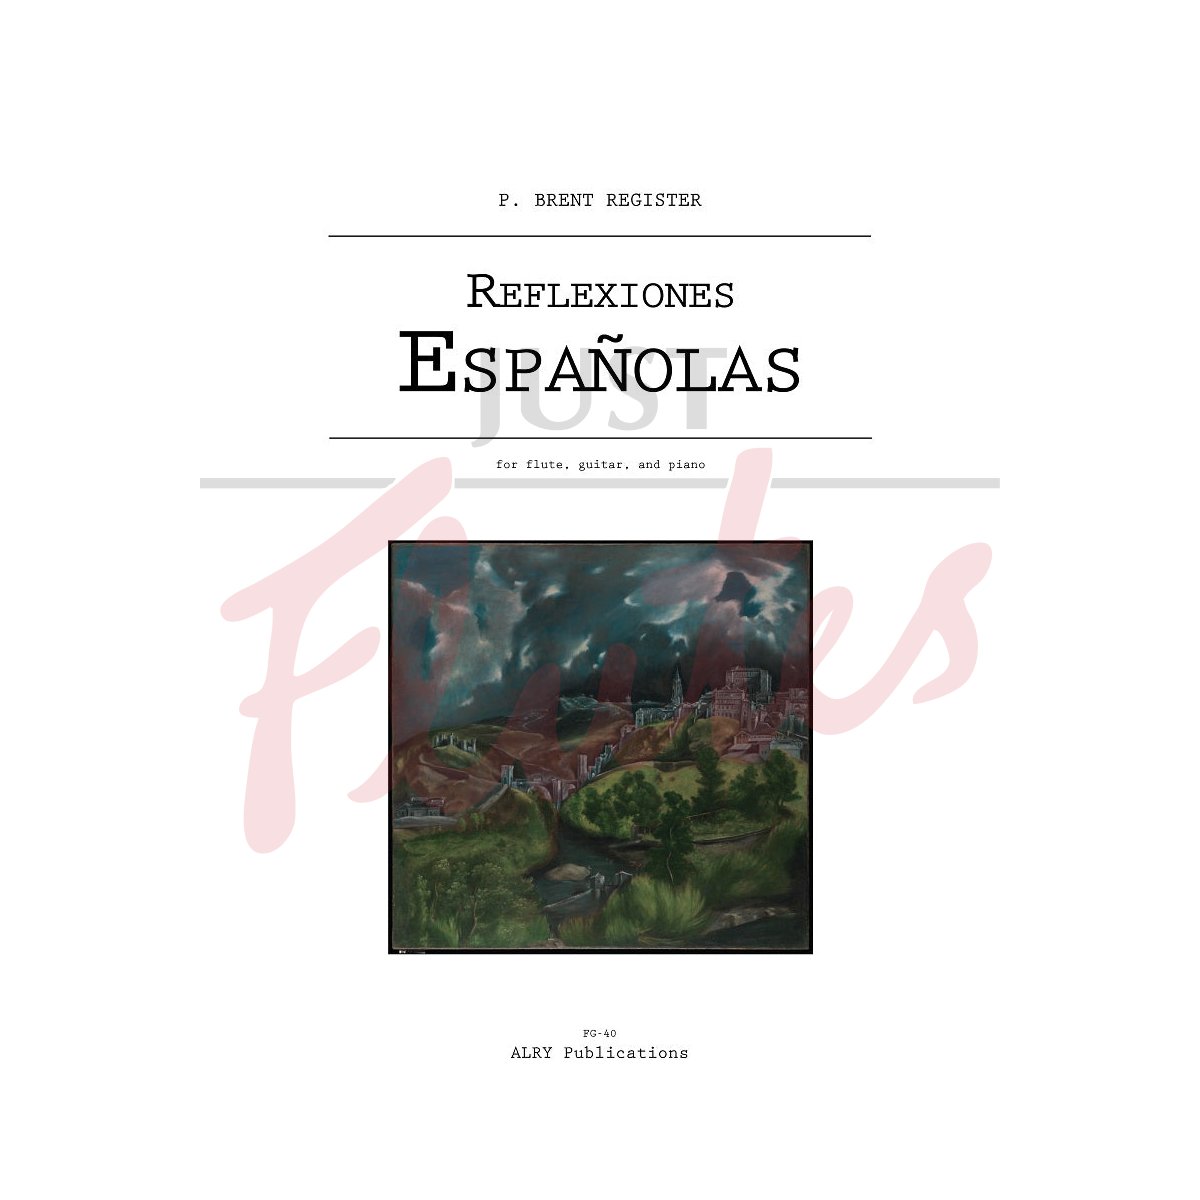 Reflexiones Espanolas for Flute, Guitar and Piano